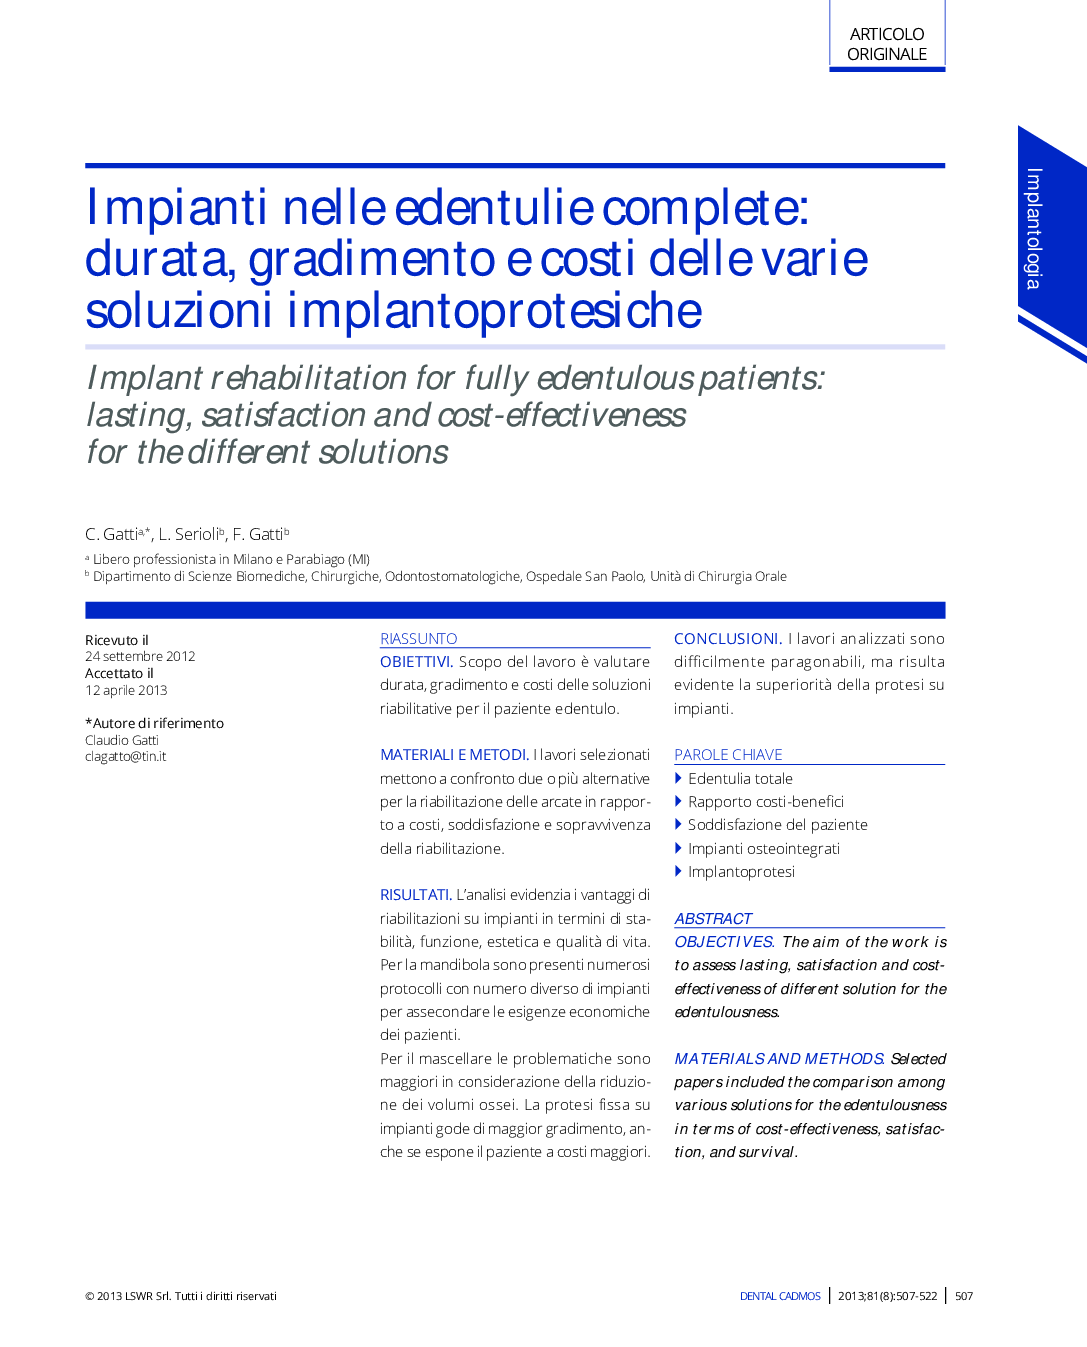 Impianti nelle edentulie complete: durata, gradimento e costi delle varie soluzioni implantoprotesiche